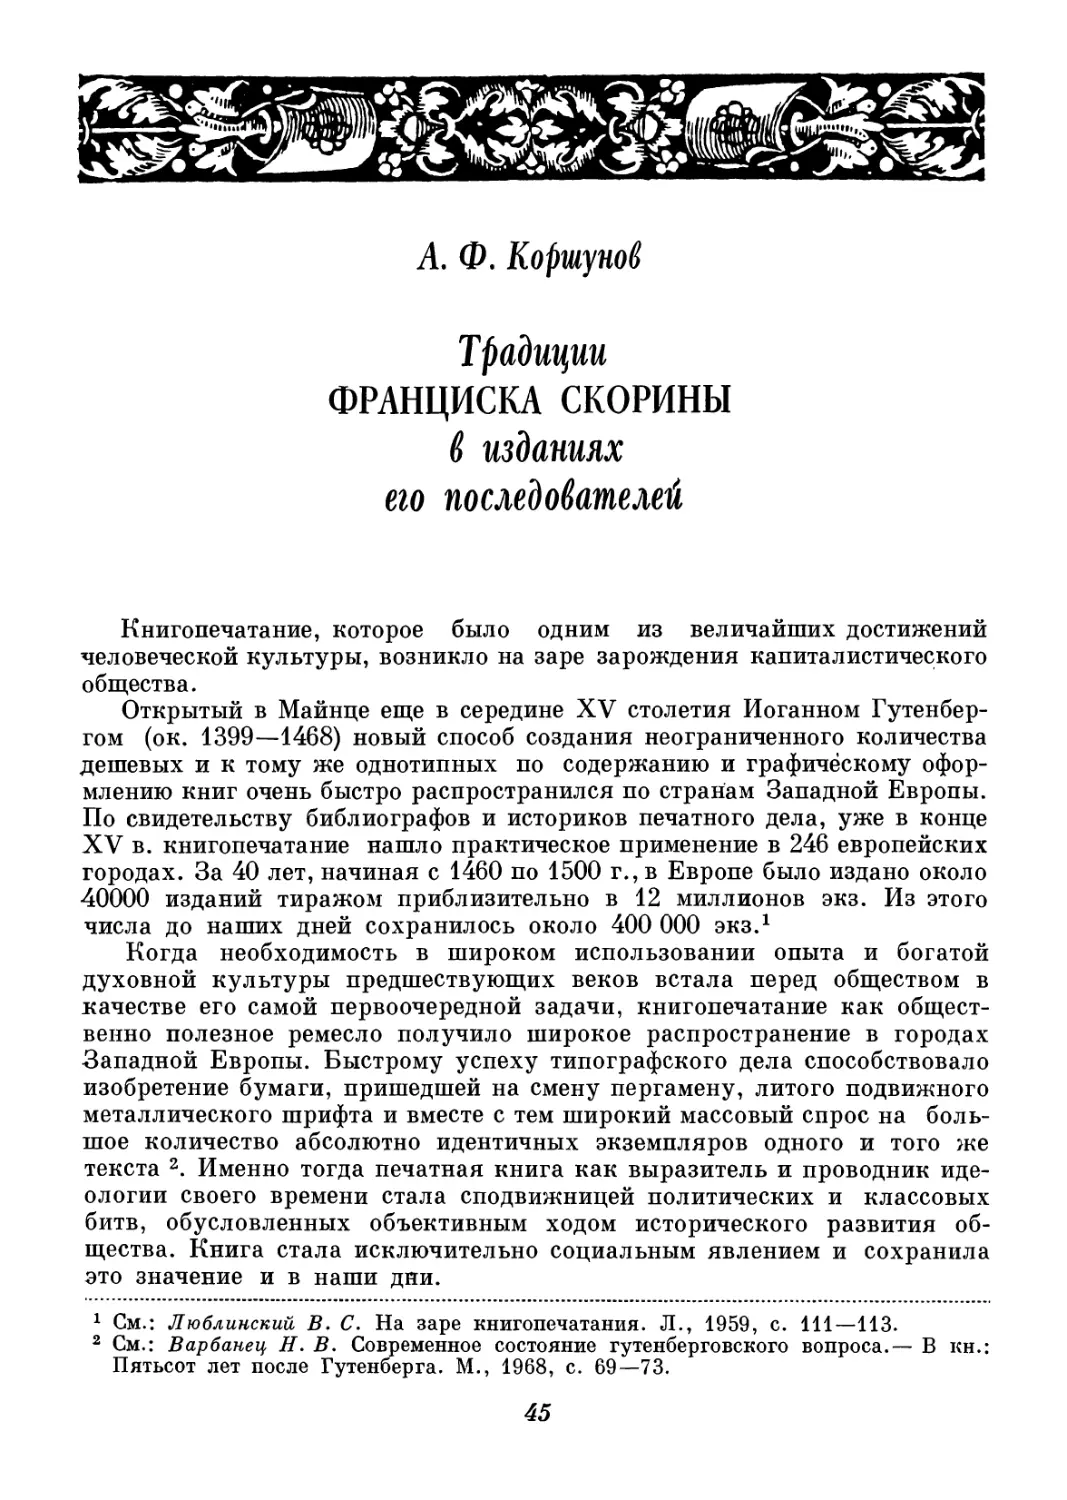 A. Ф. Коршунов - Традиции Ф. Скорины в изданиях его последователей